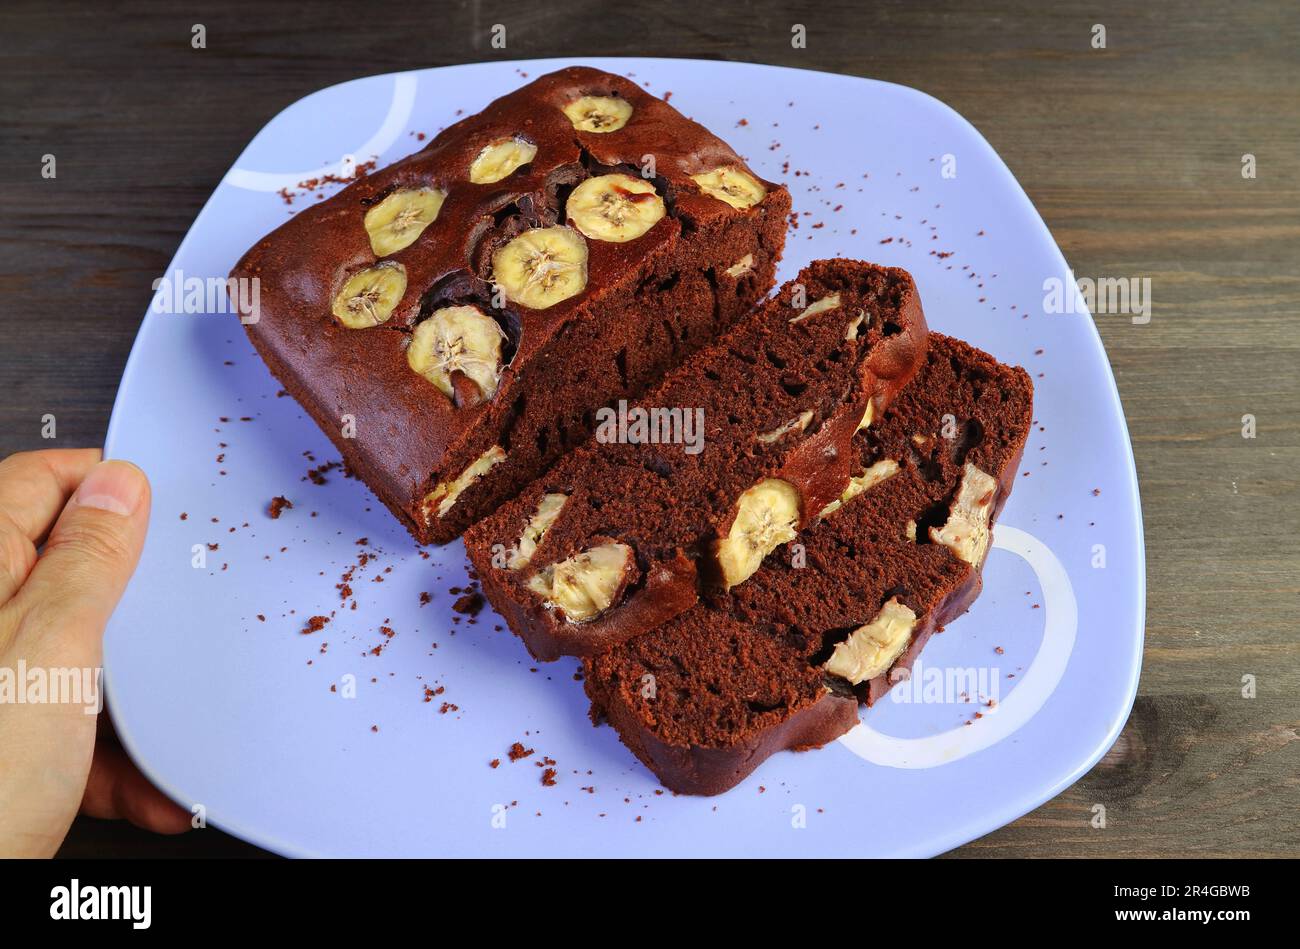 Frisch gebackener, köstlicher, hausgemachter Bananenkuchen mit dunkler Schokolade auf einem Holztisch Stockfoto